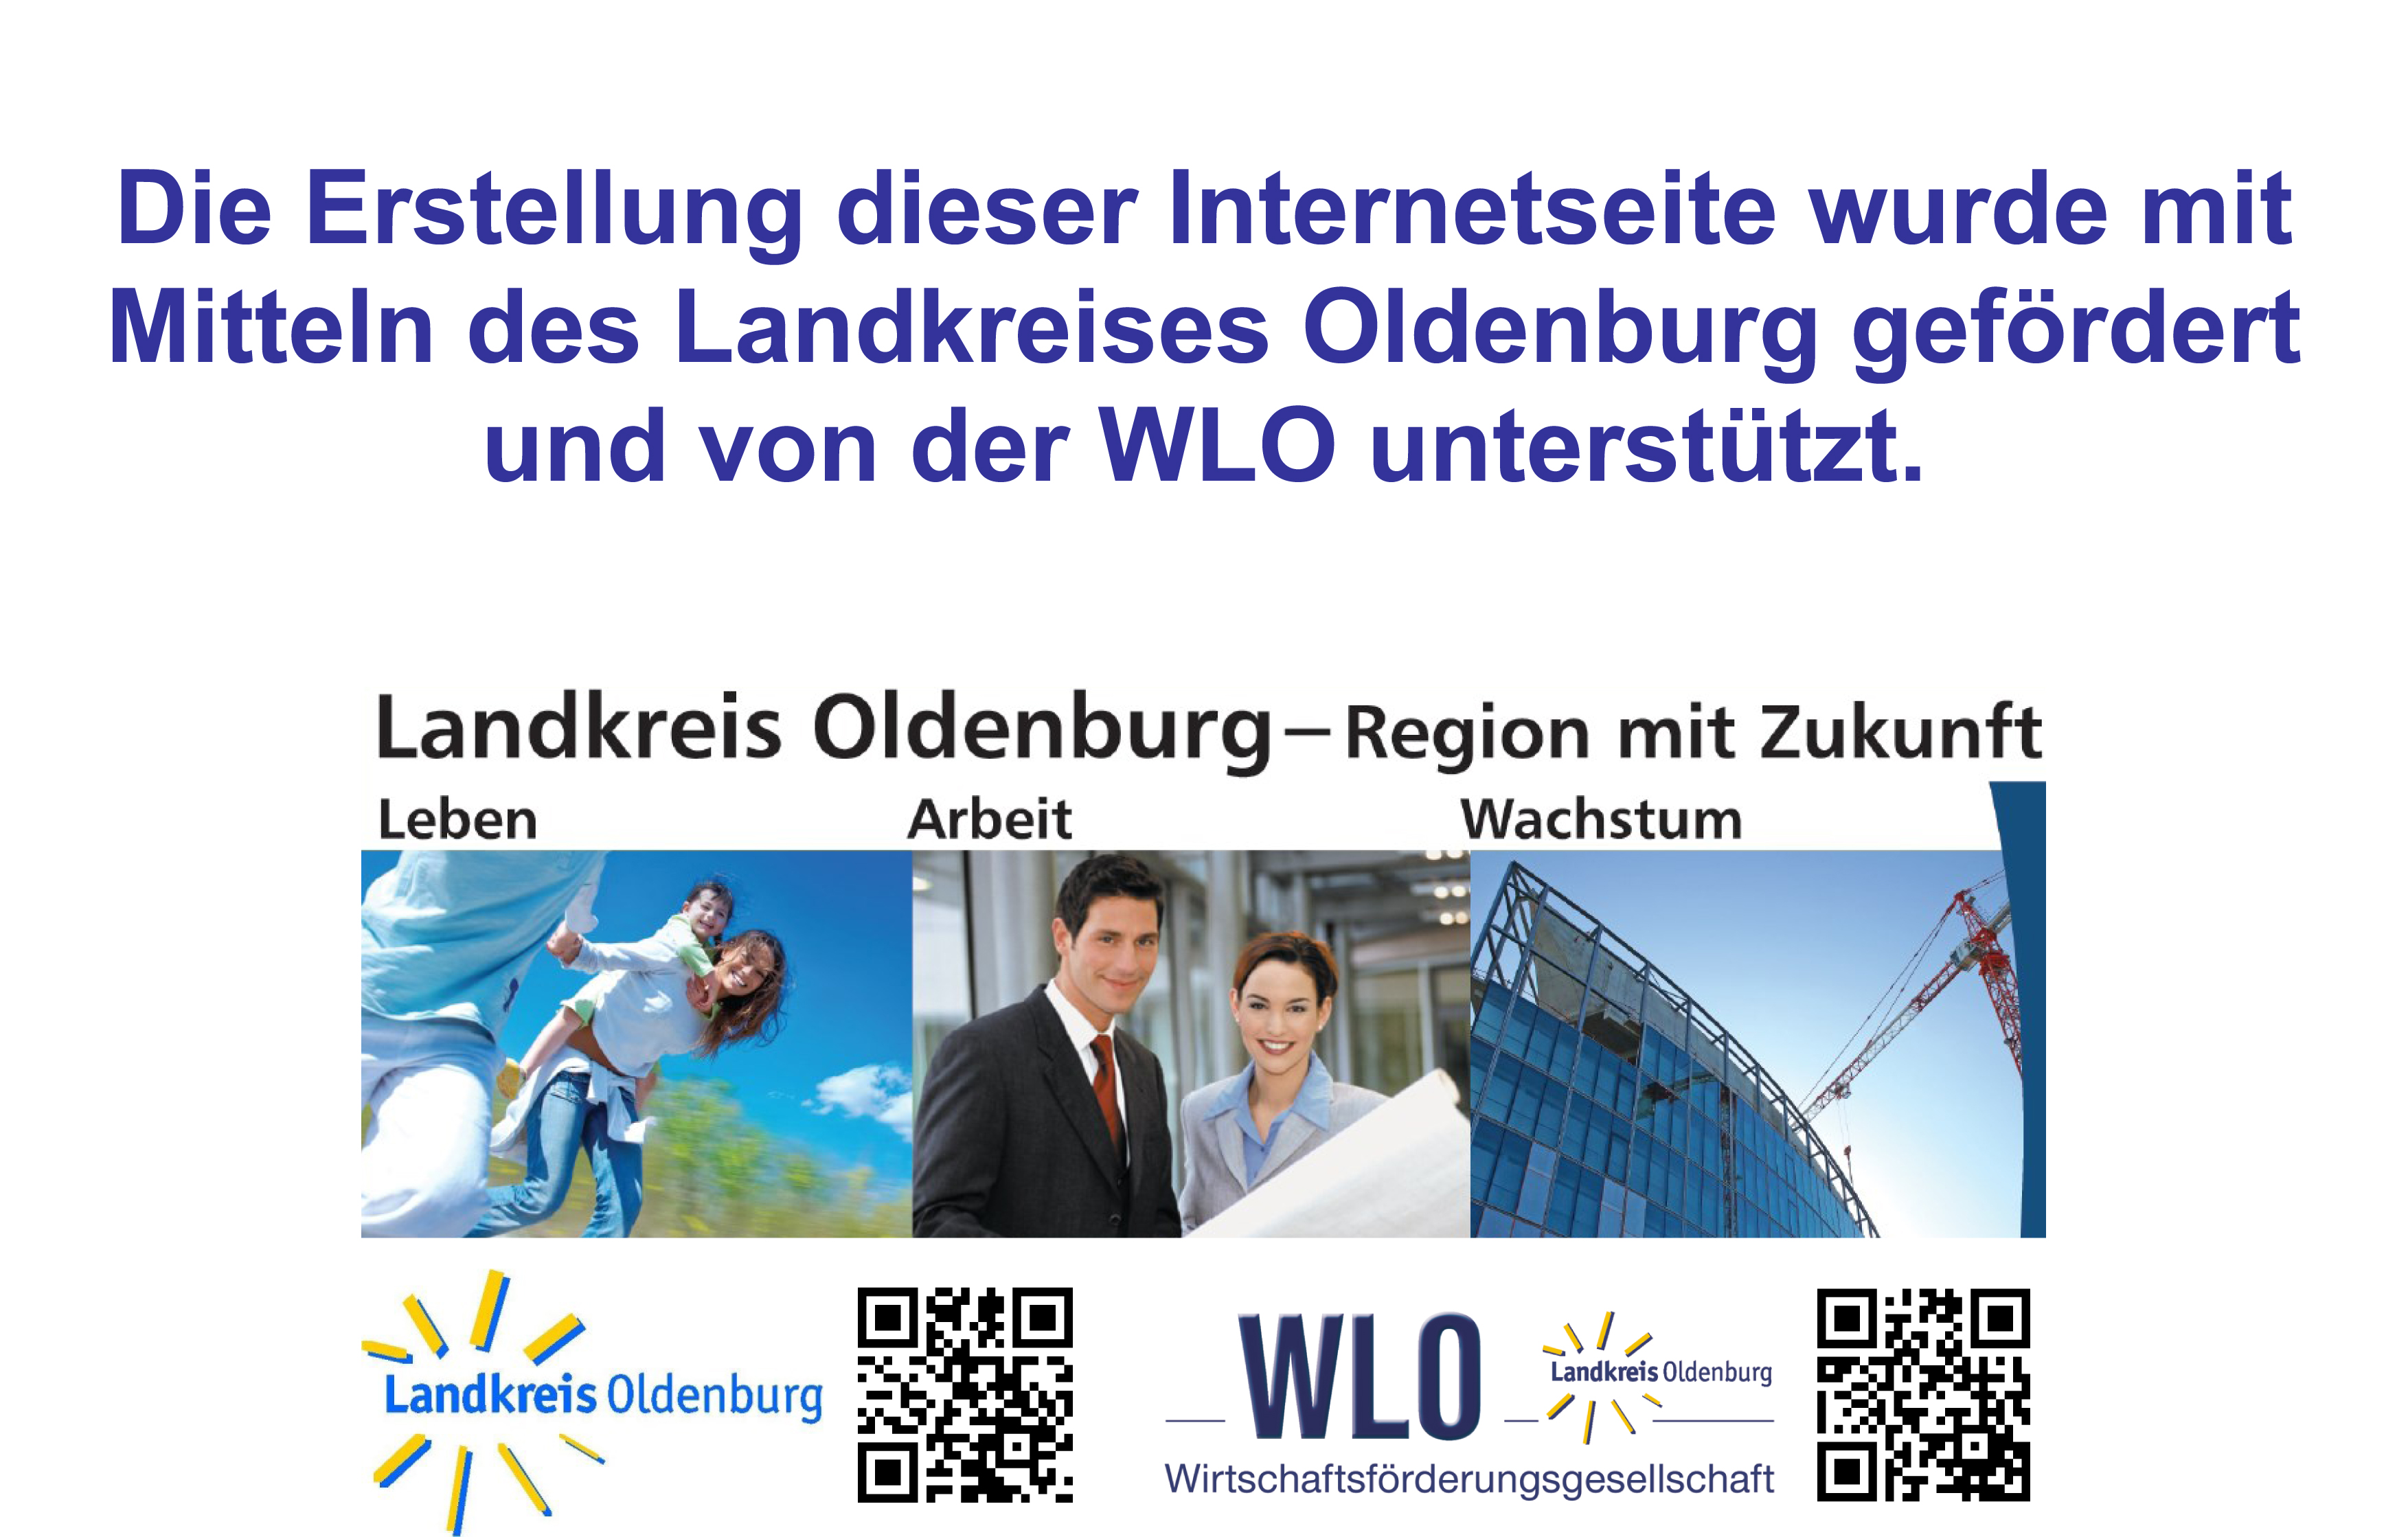 WLO Landkreis Oldenburg - Fördermöglichkeiten für Unternehmen. https://www.wlo.de/